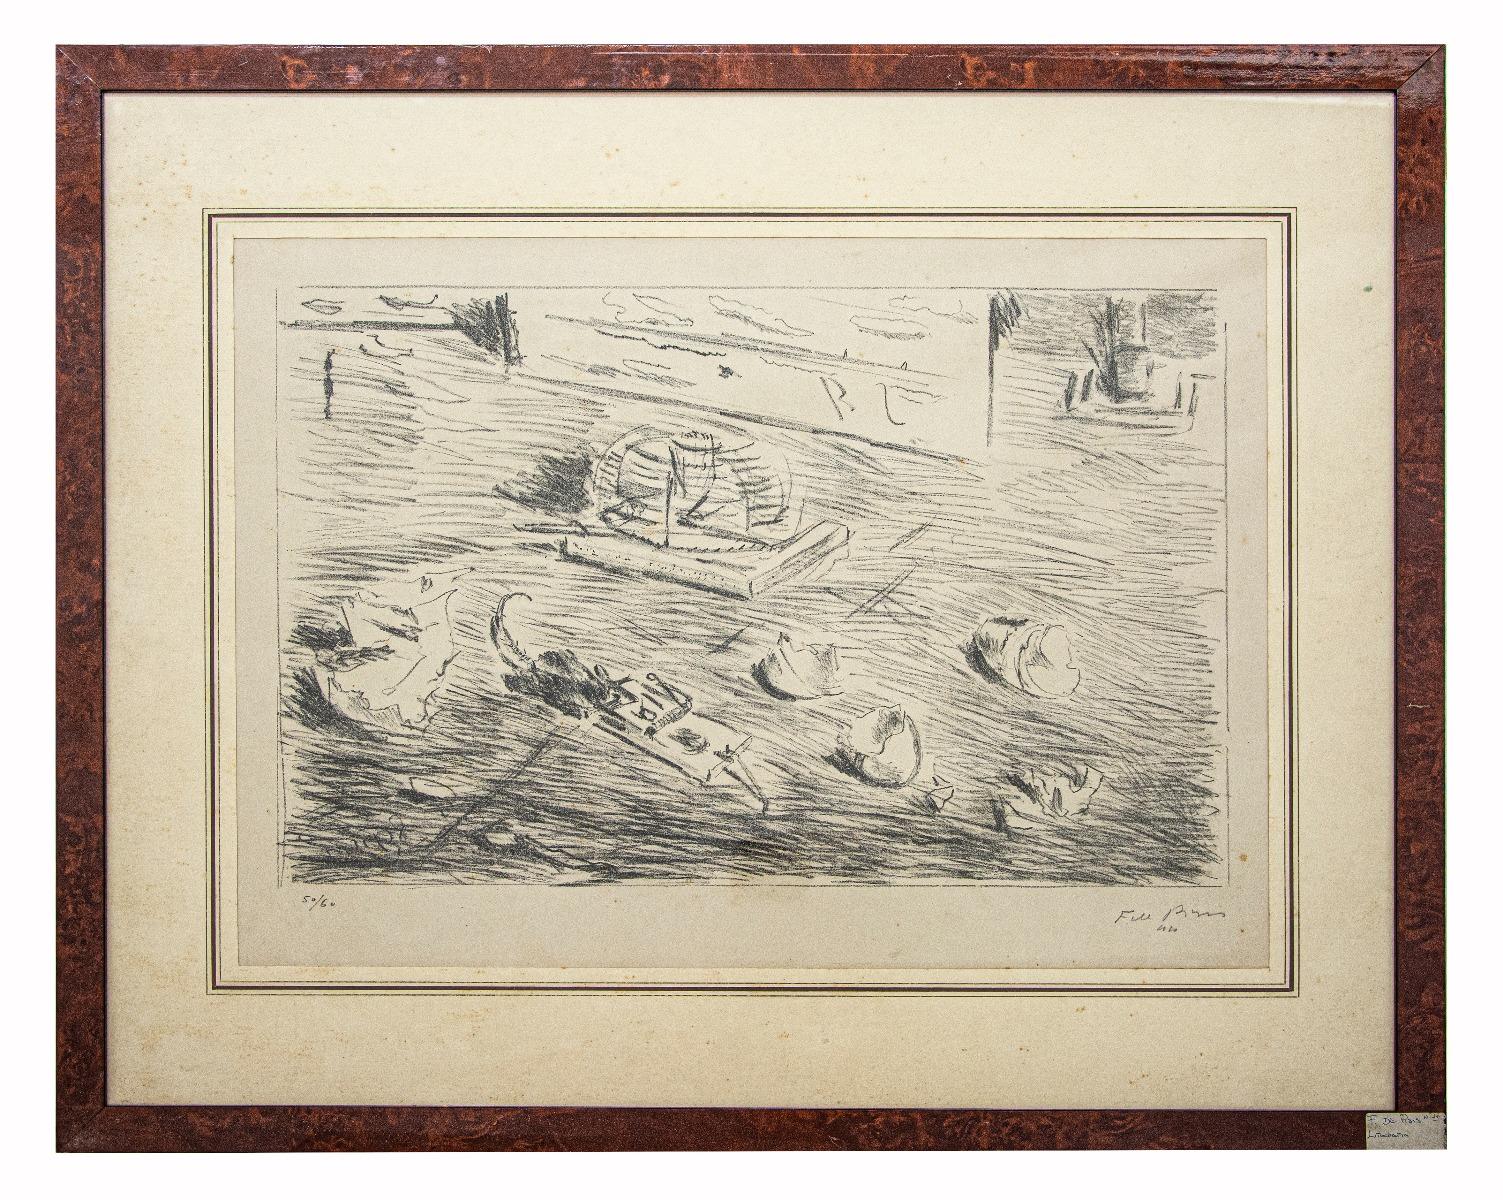 Das Stillleben ist ein Originalkunstwerk von Filippo De Pisis aus den 1940er Jahren.

Original-Schwarz-Weiß-Lithographie auf Papier. 

Handsigniert am unteren rechten Rand. Links unten nummeriert. Auflage von 60 Stück.

Neuwertiger Zustand (einige